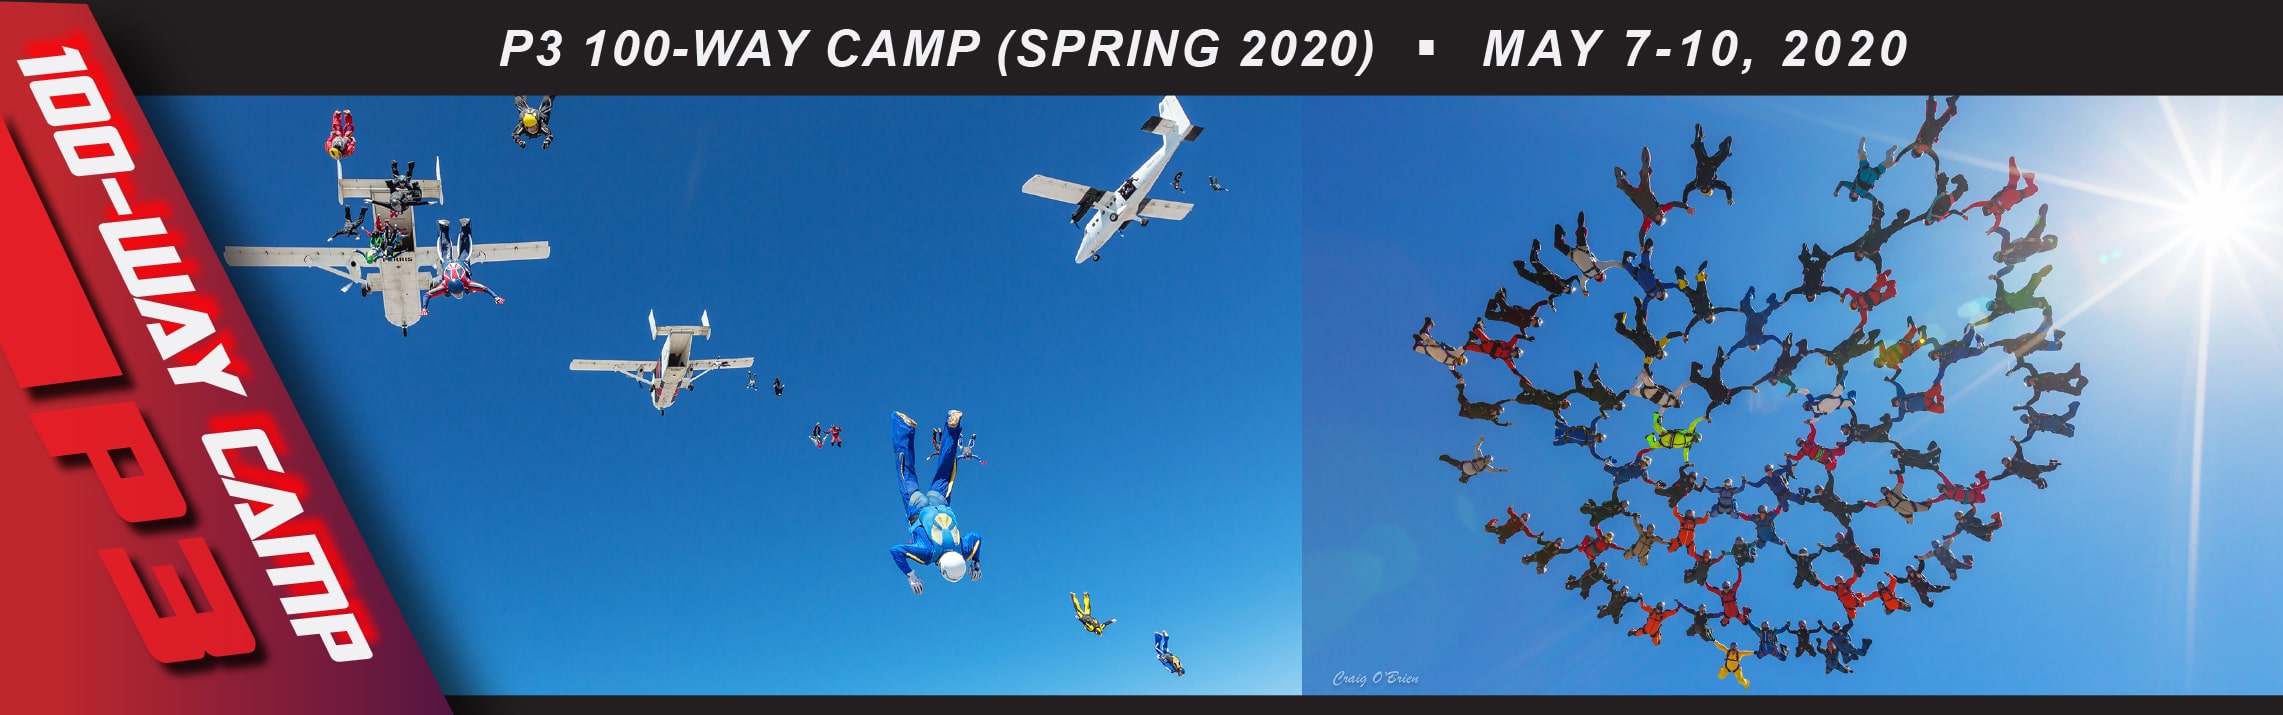 P3 100-Way Camp (May 2020)